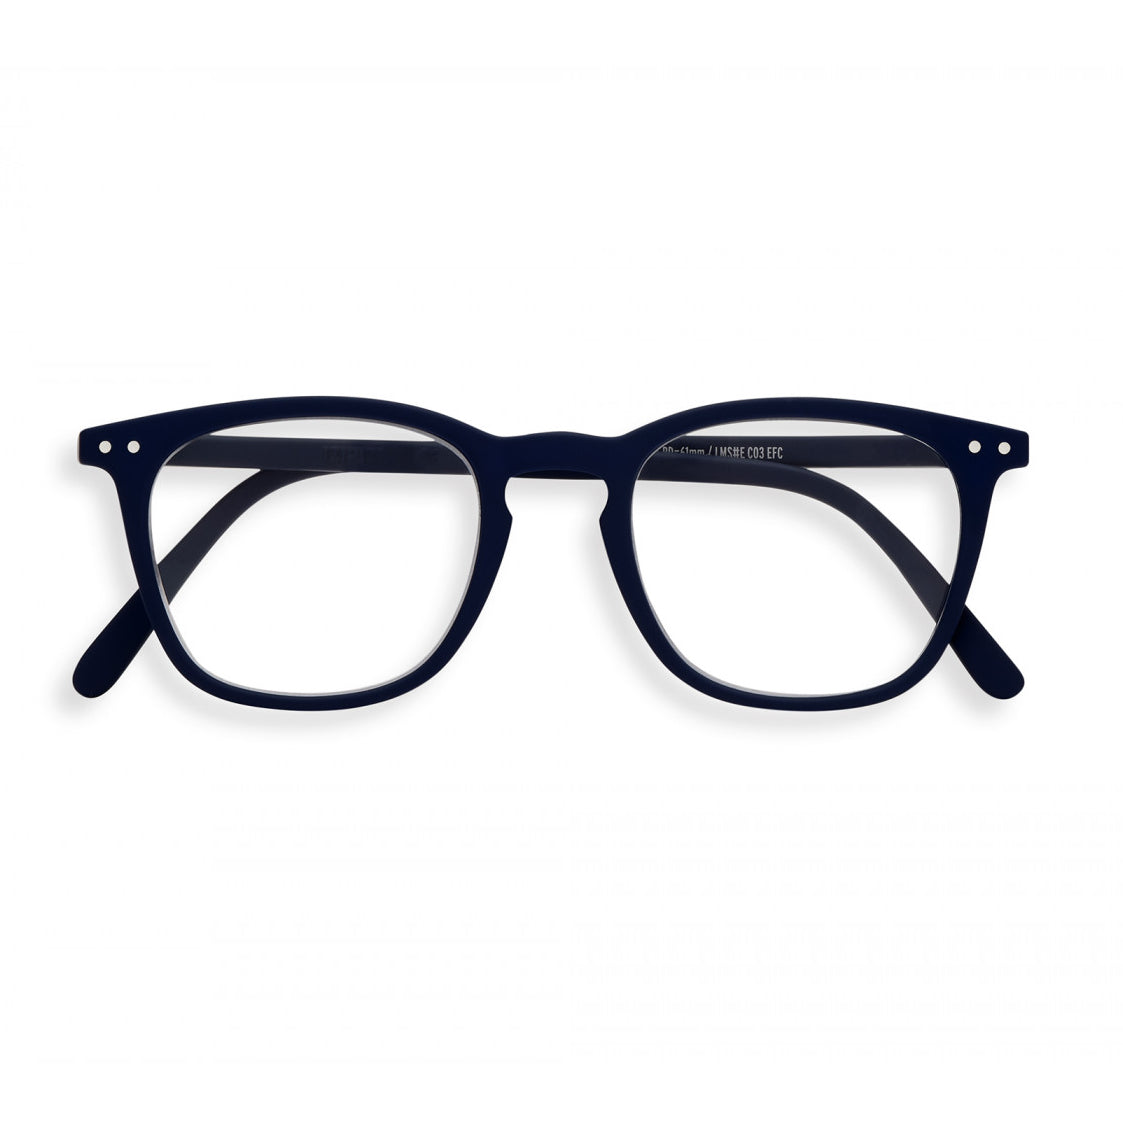 Izipizi reading glasses E shape navy blue